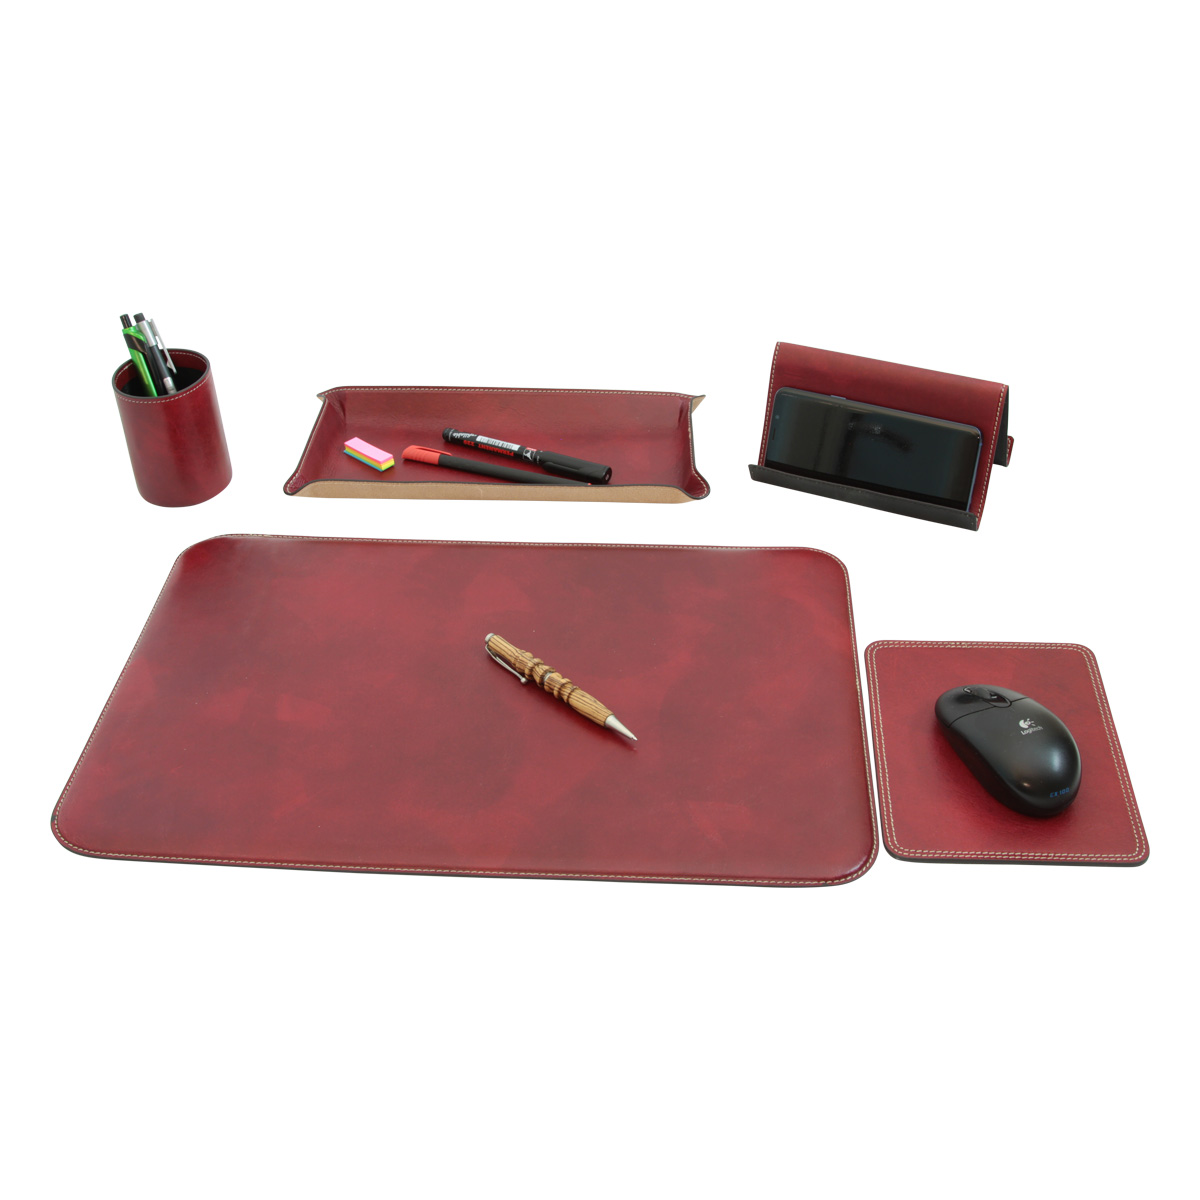 Leather desk kit - 5 pcs  red | 769089RO UK | Old Angler Firenze